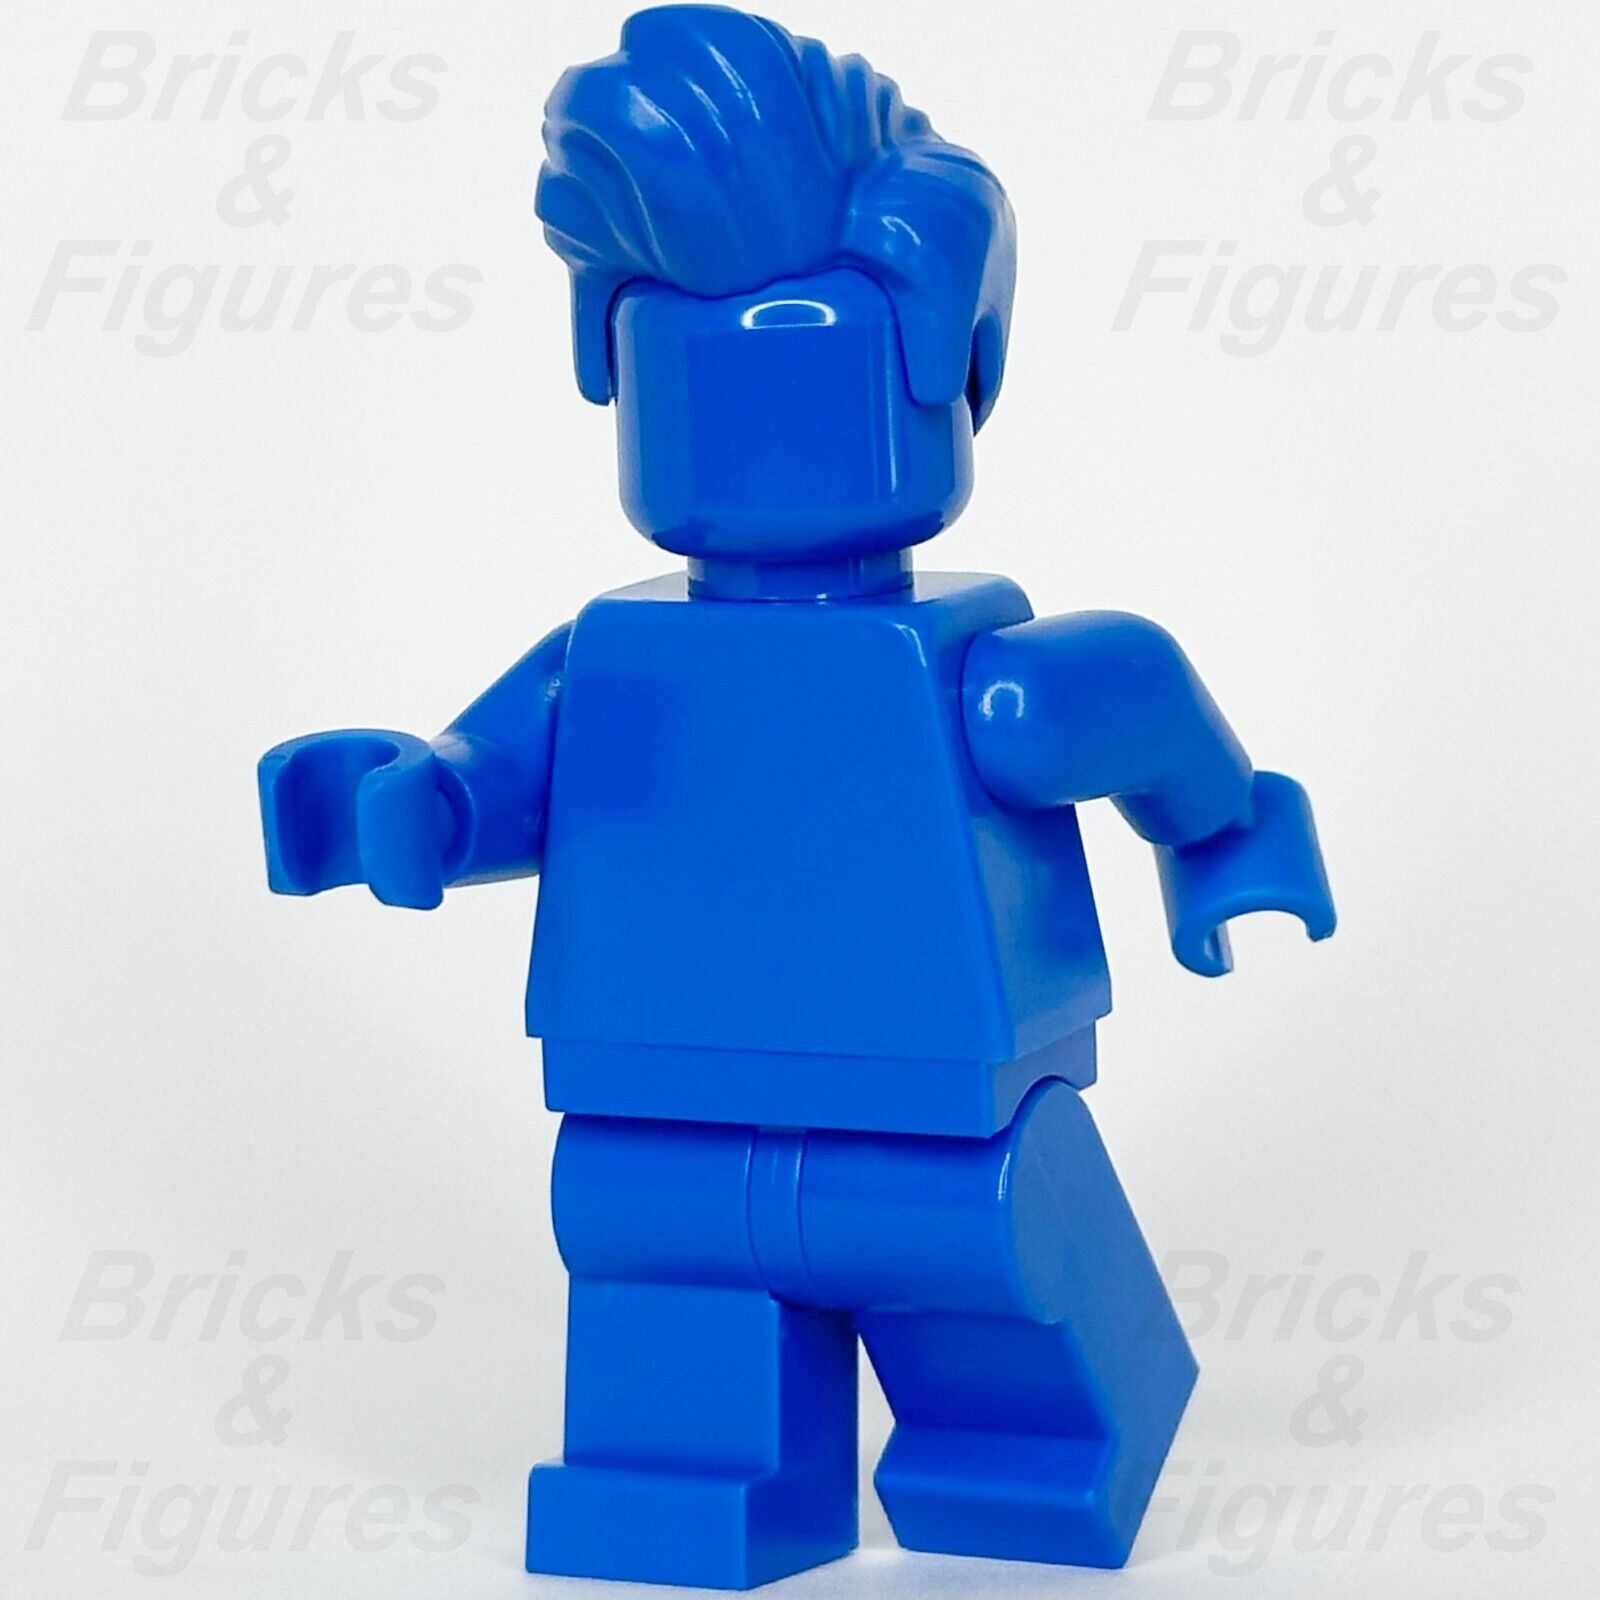 レゴ みんなすごい ブルー ミニフィギュア モノクロ 40516 ミニフィグ tls106